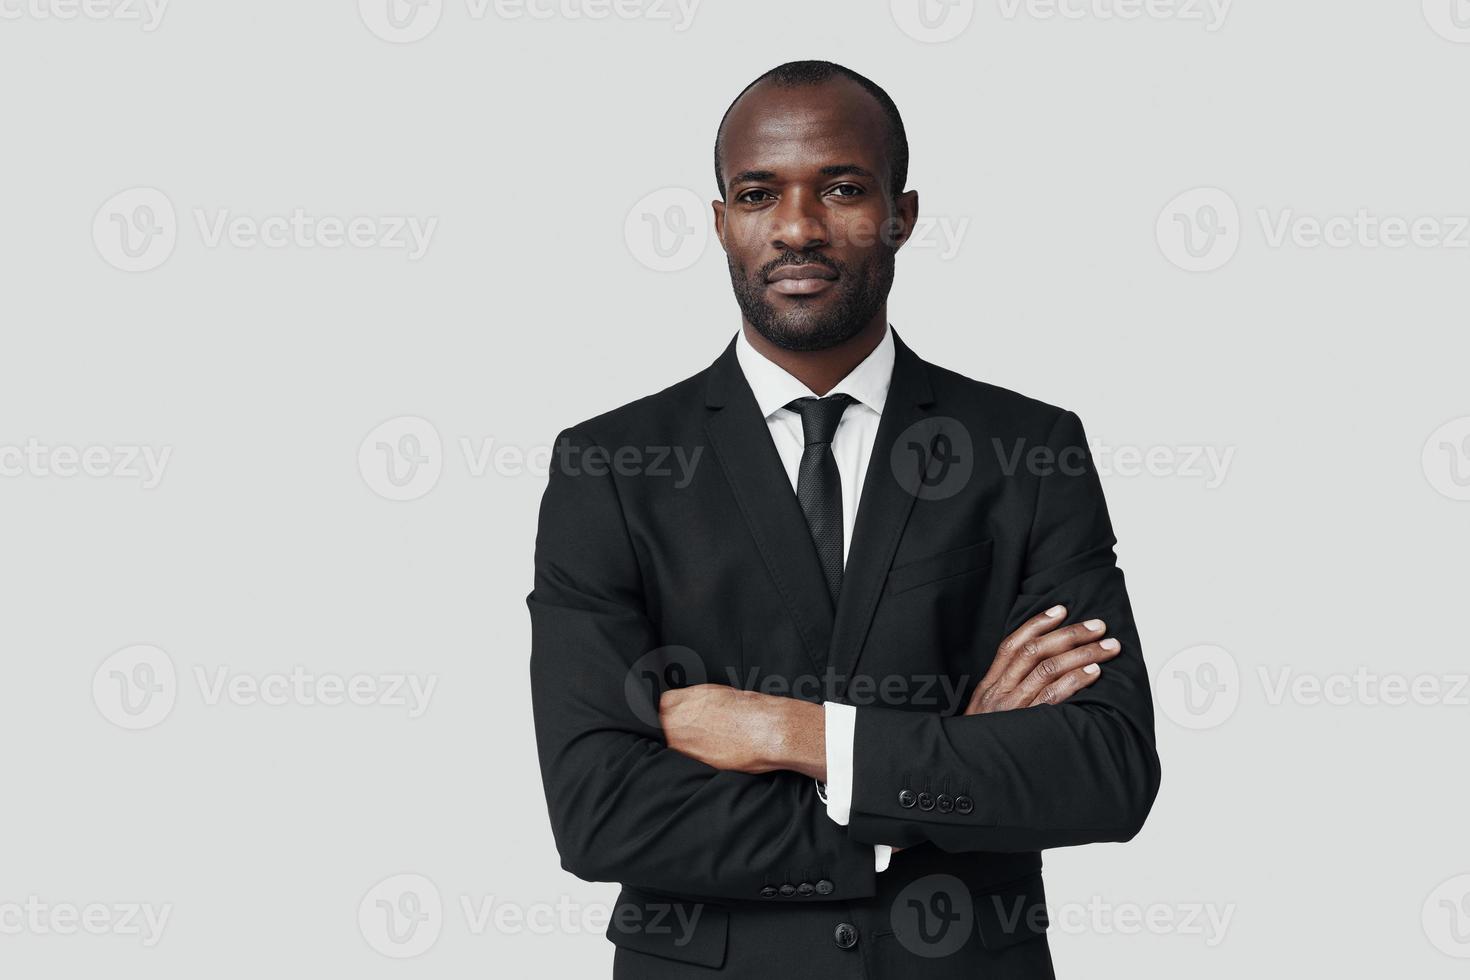 jovem africano bonito em trajes formais, olhando para a câmera em pé contra um fundo cinza foto